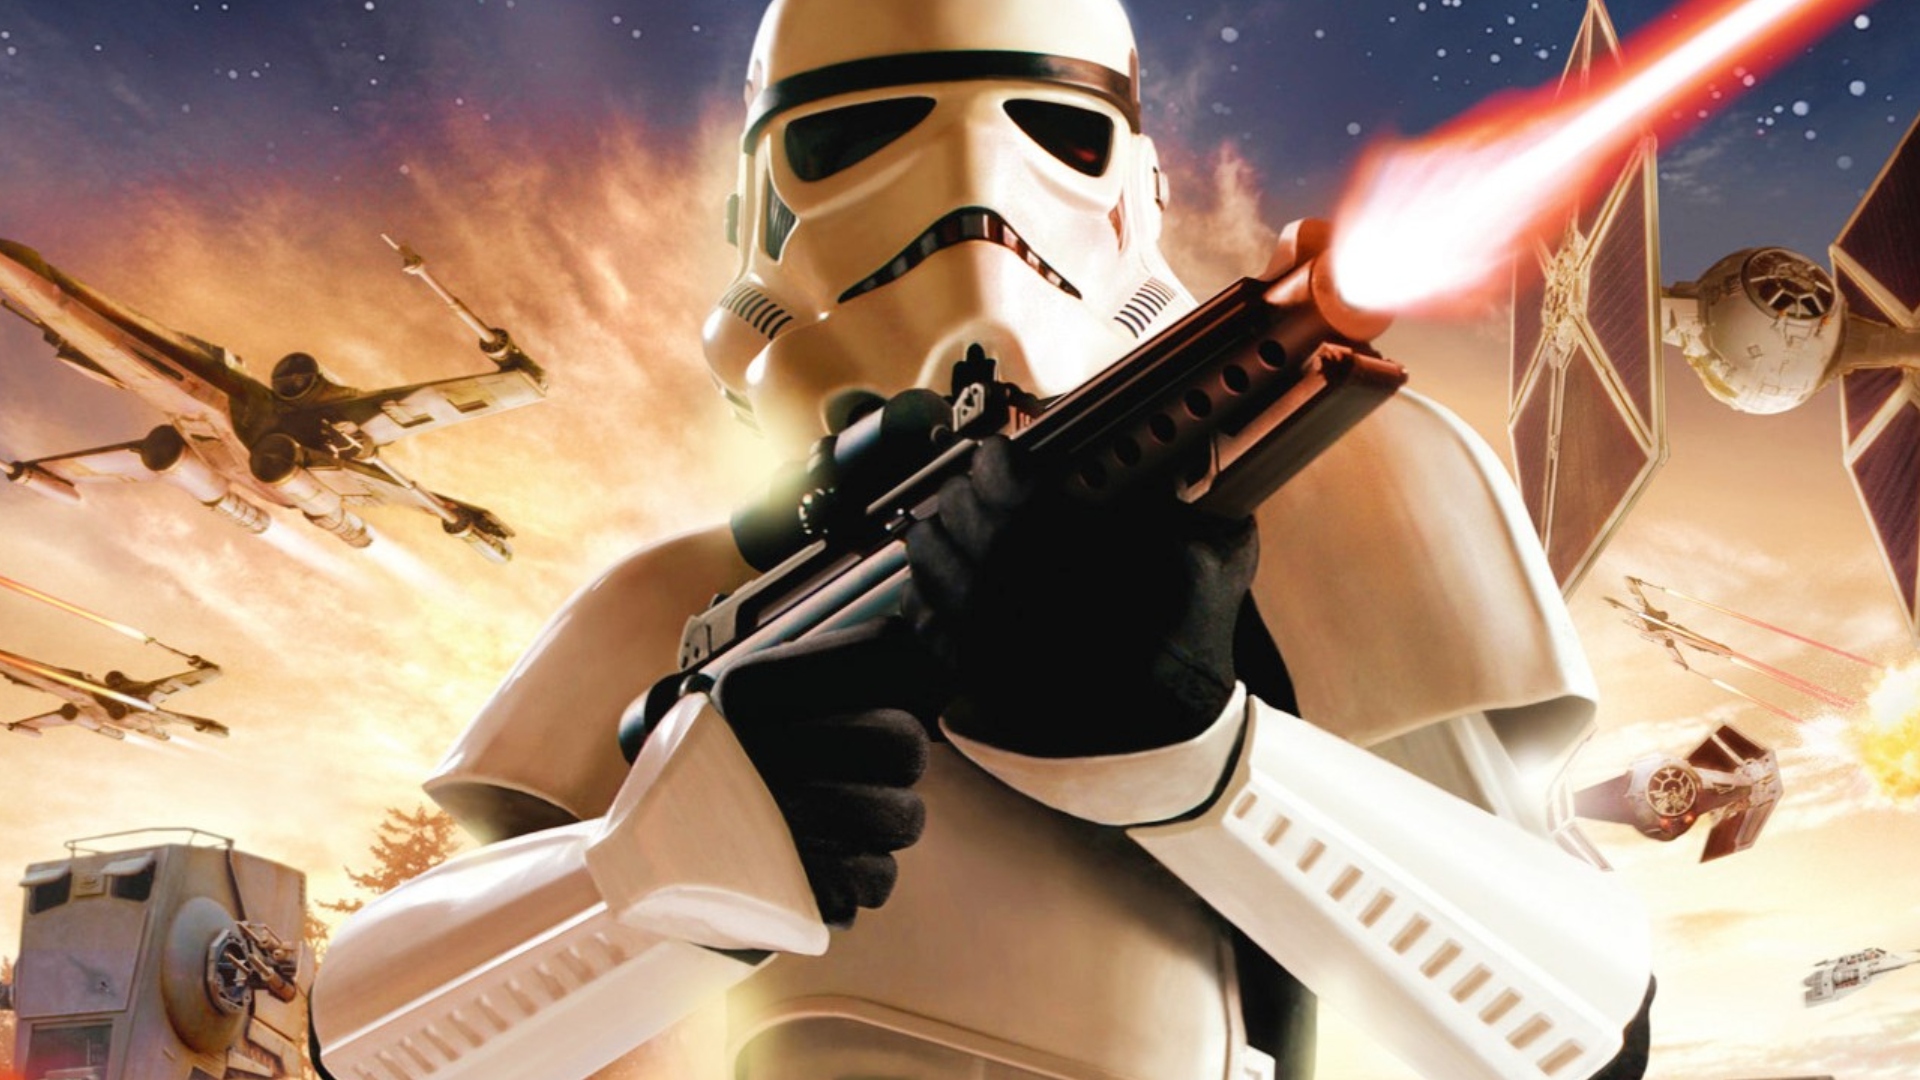 Star Wars Battlefront returns with Insurgency Sandstorm conversion mod